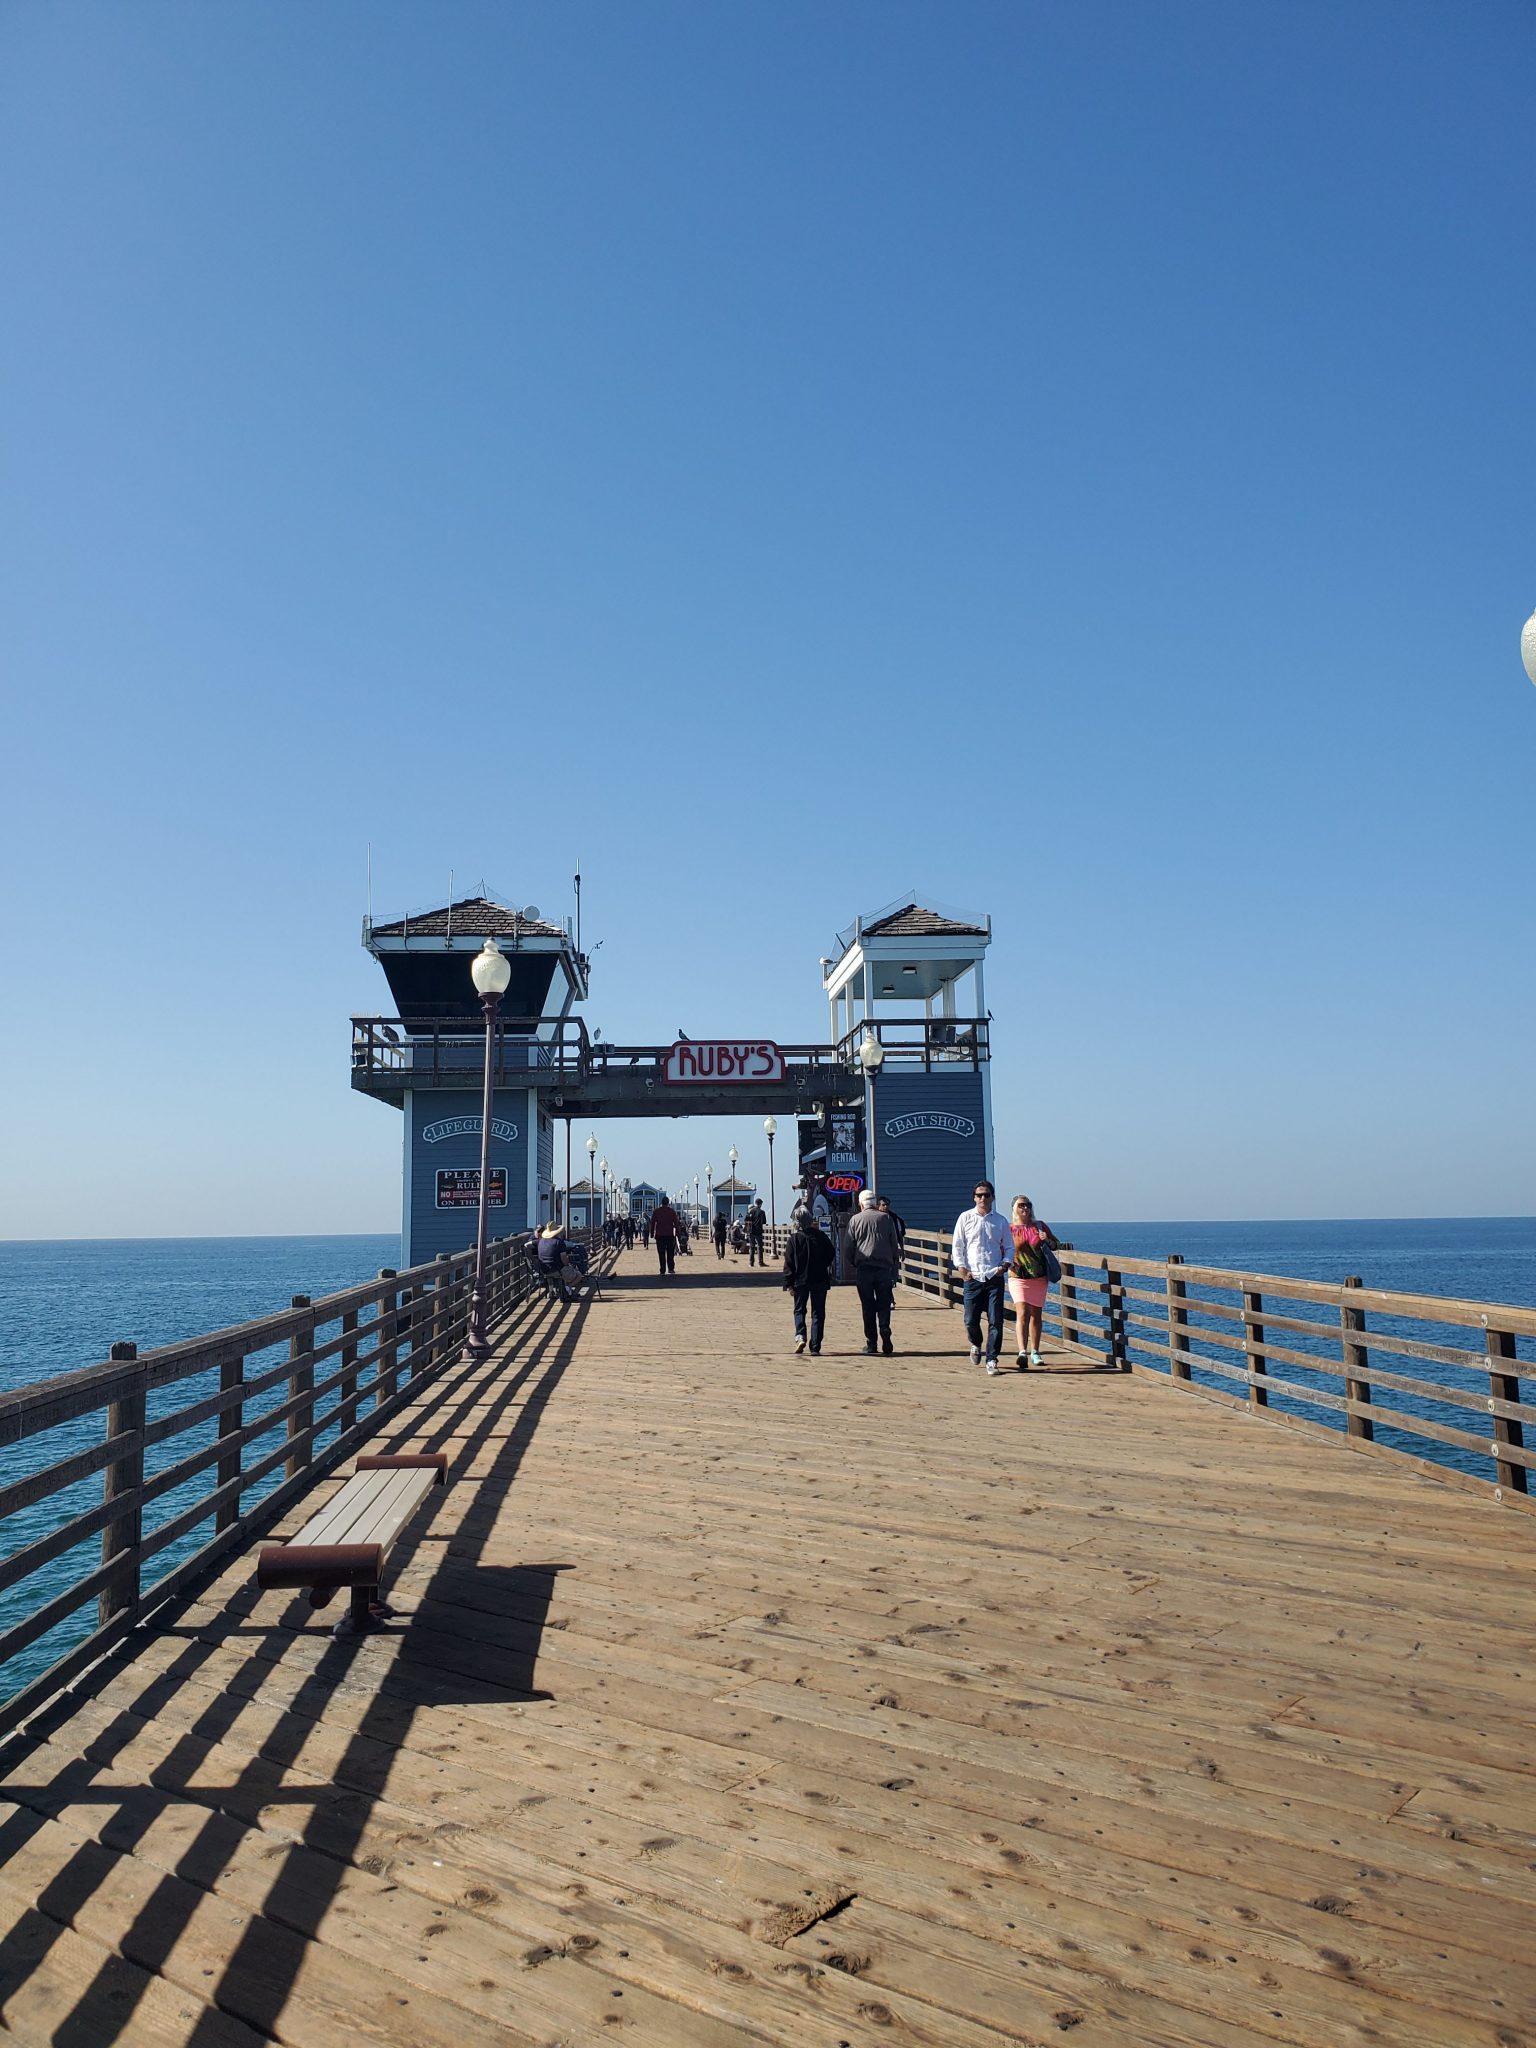 San Diego Piers